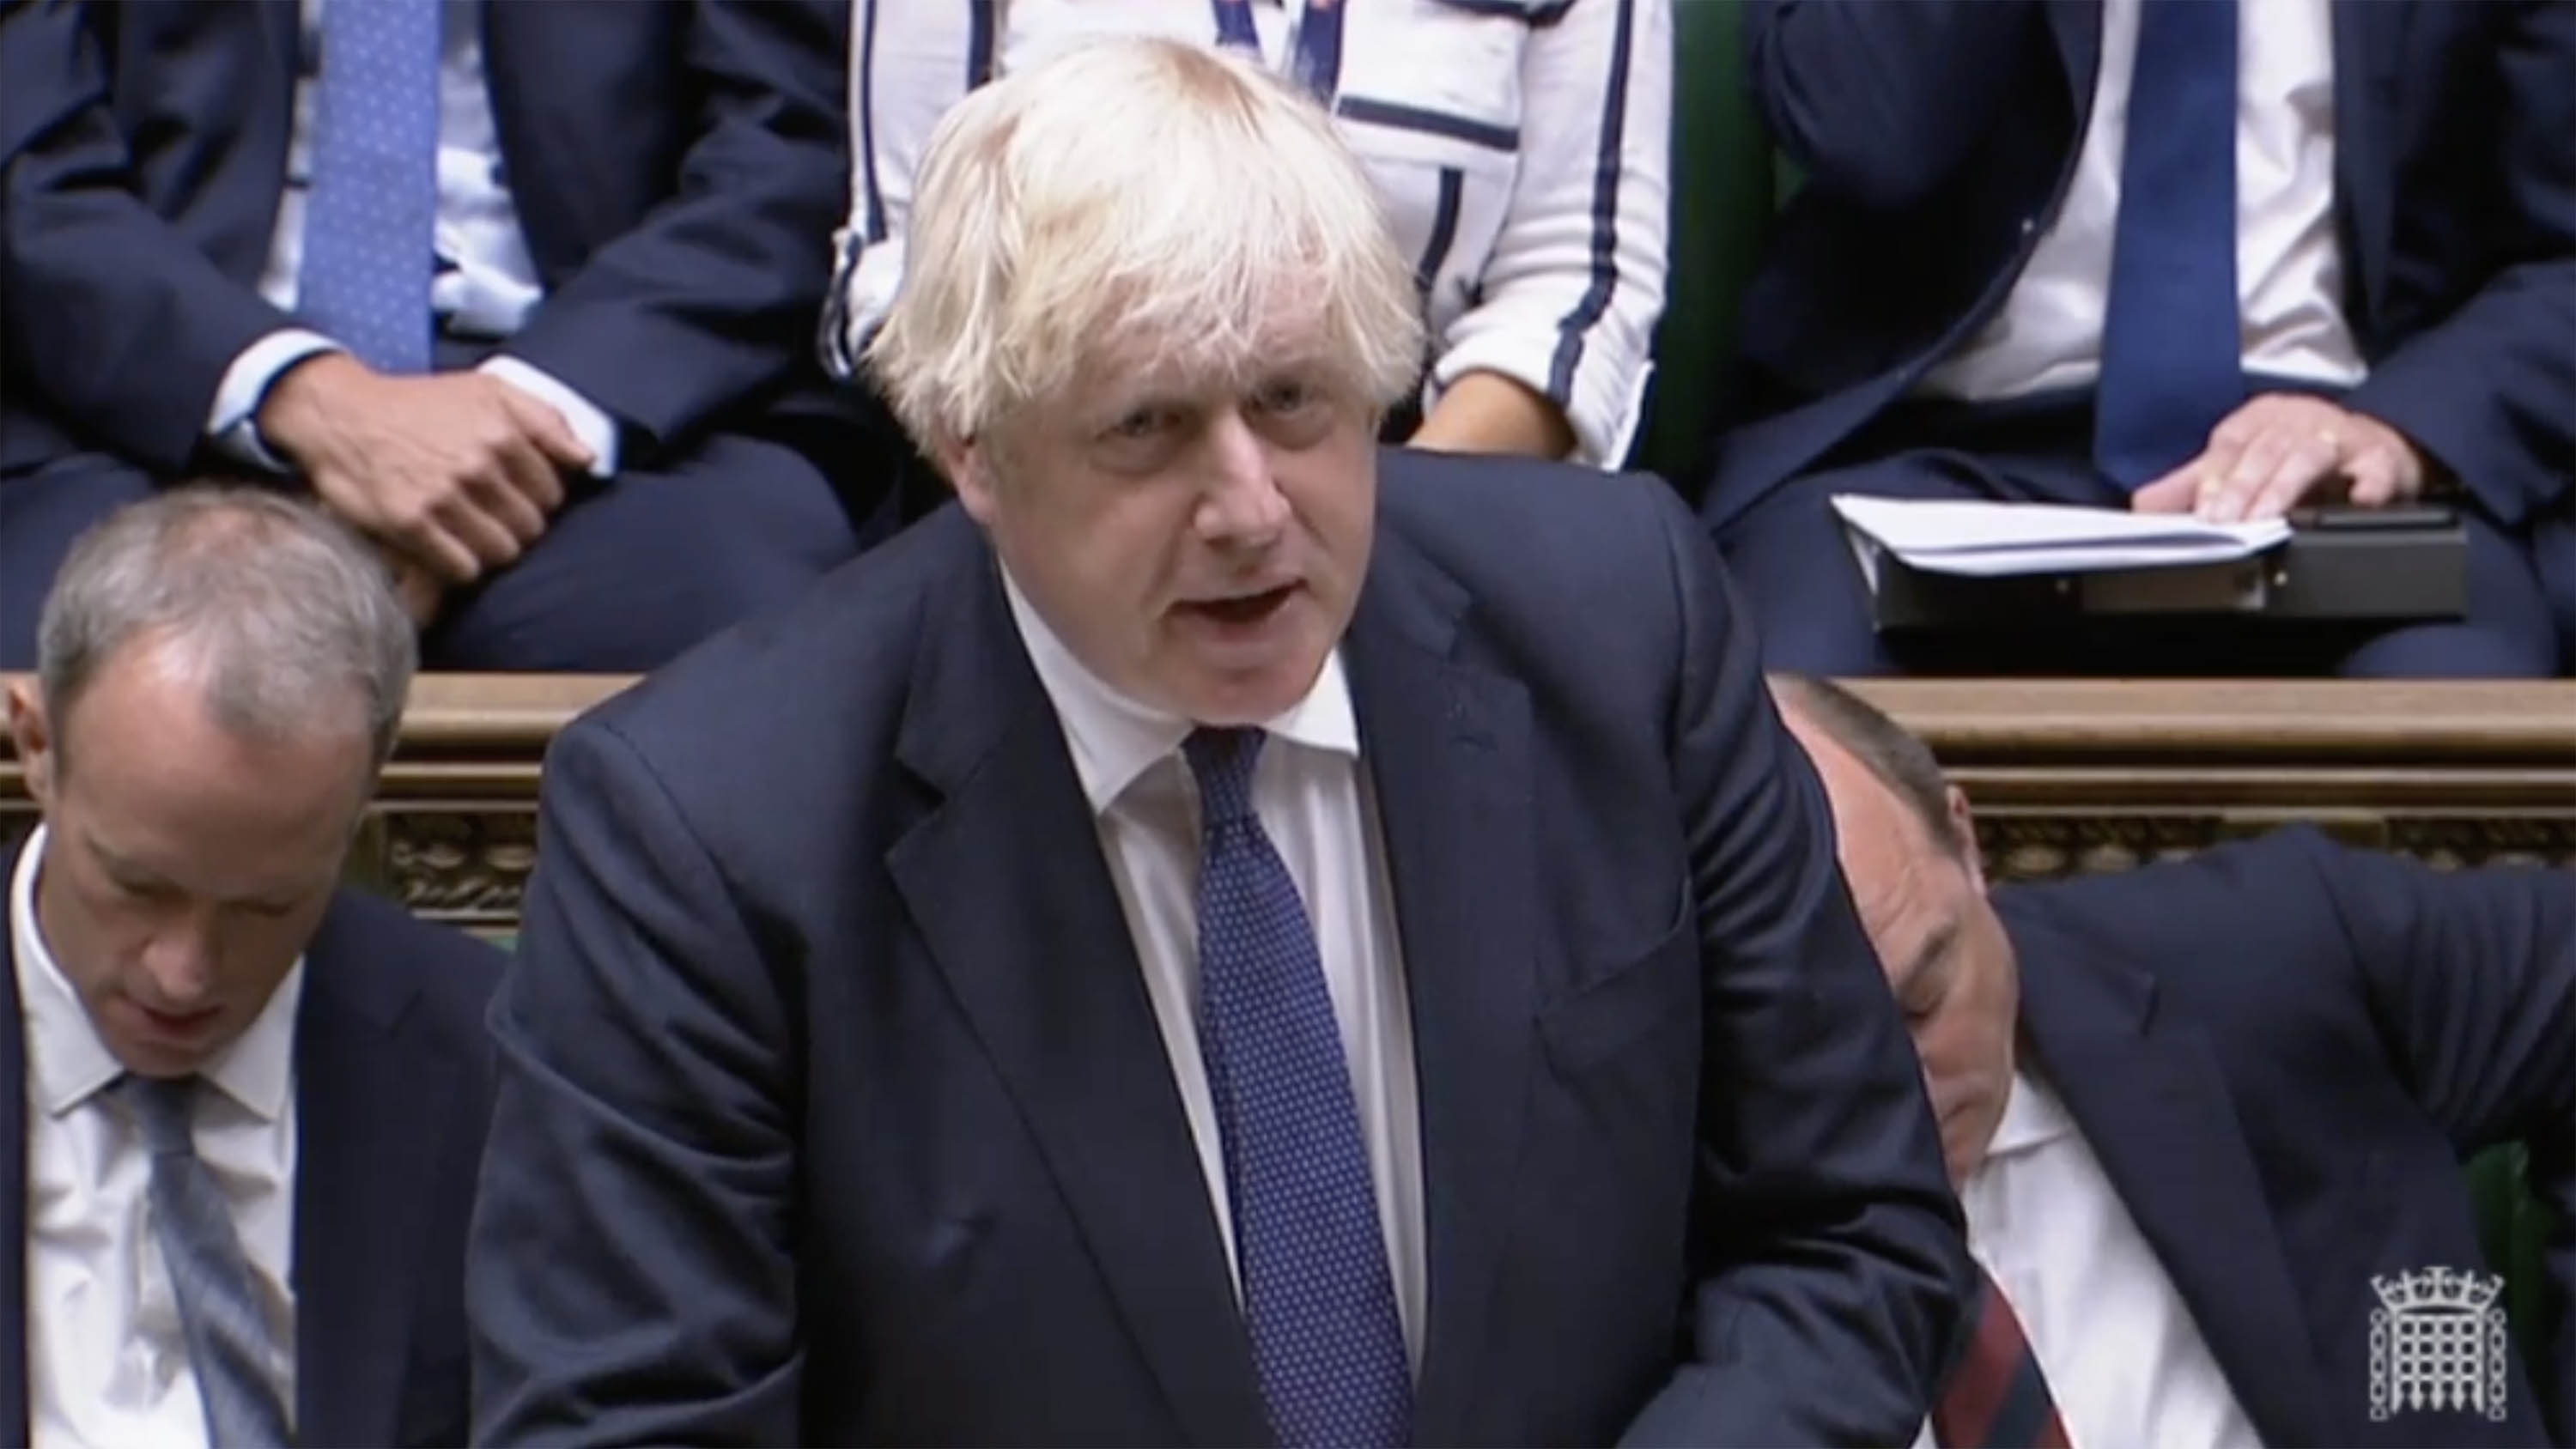 UK Prime Minister Boris Johnson speaks in Parliament on Wednesday, August 18.